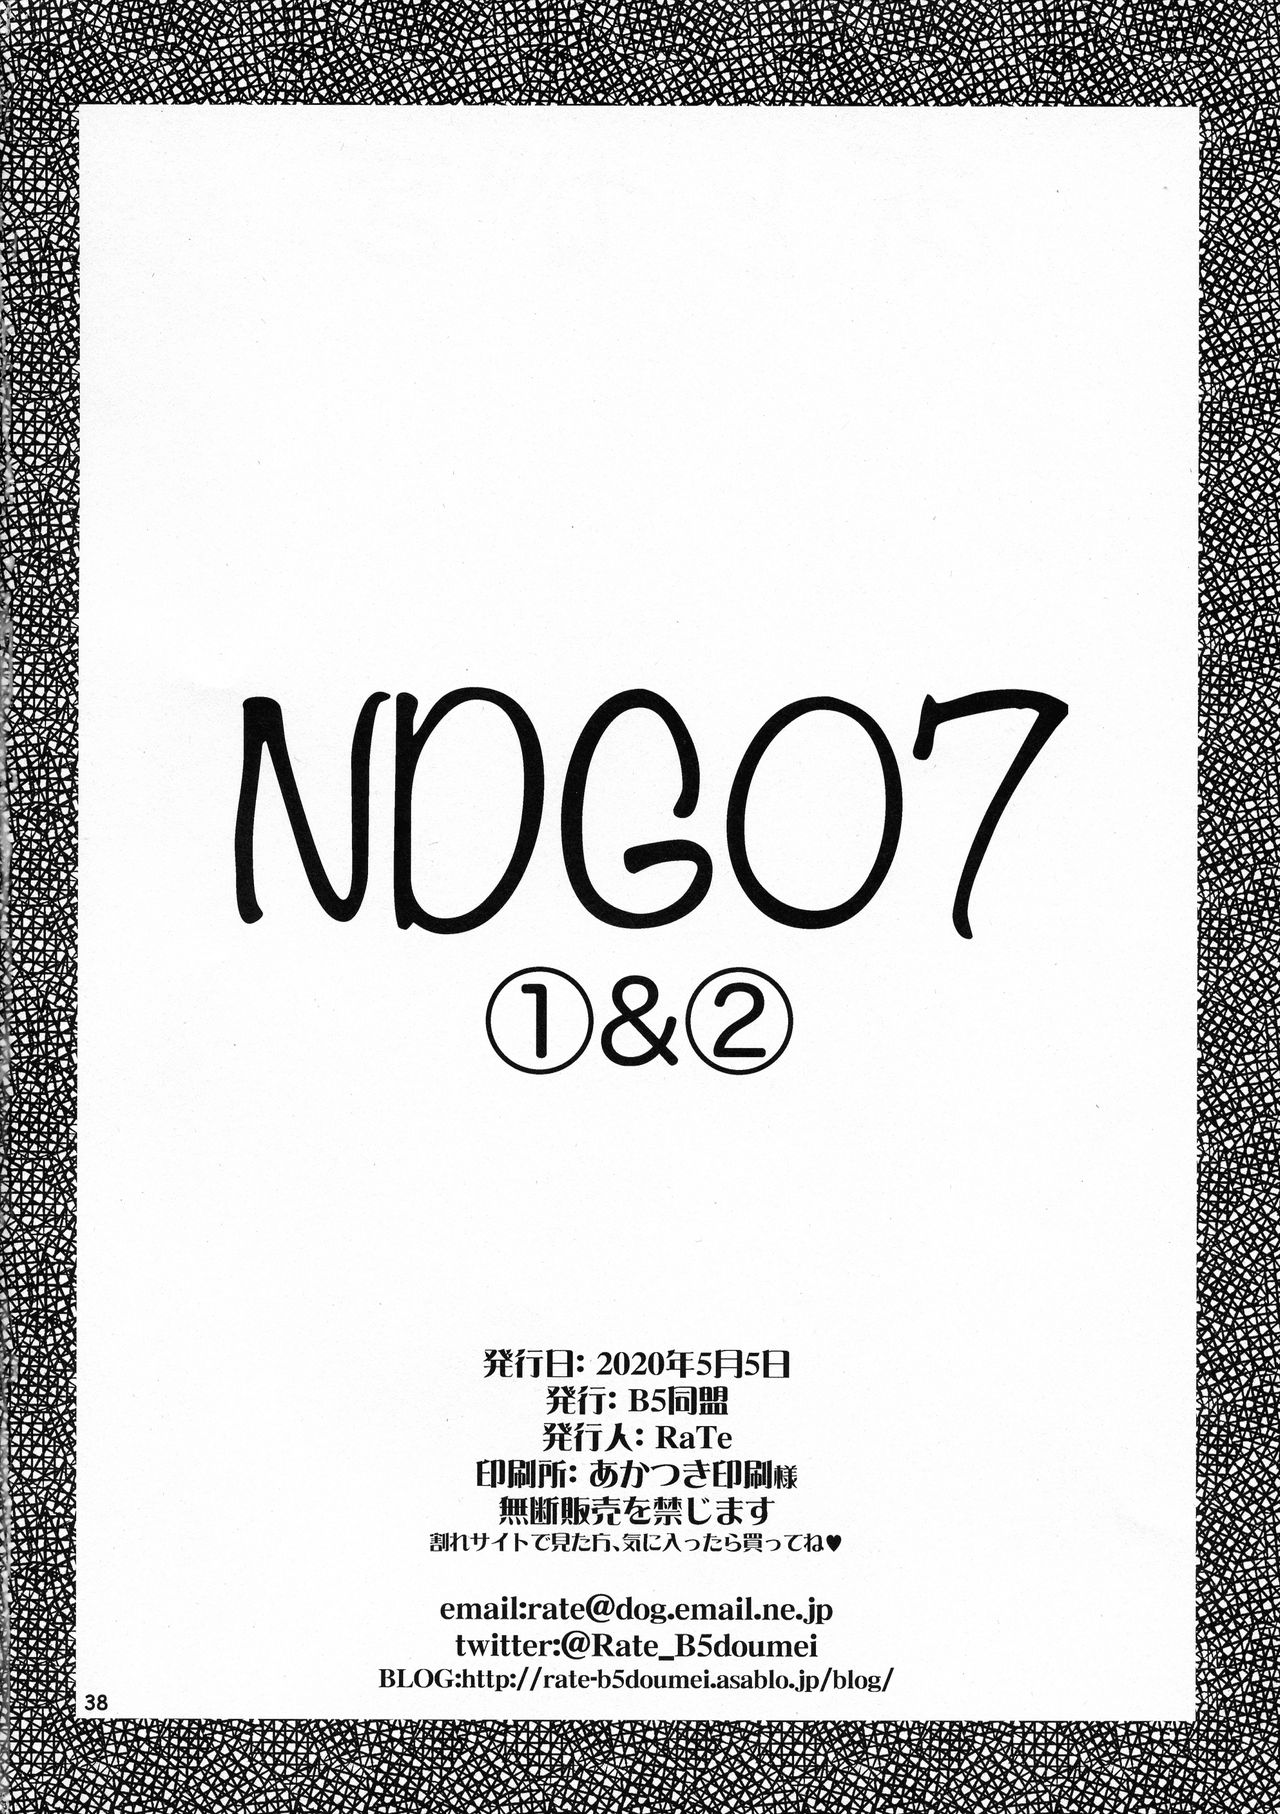 [B5同盟 (RaTe)] NDG07 1&2